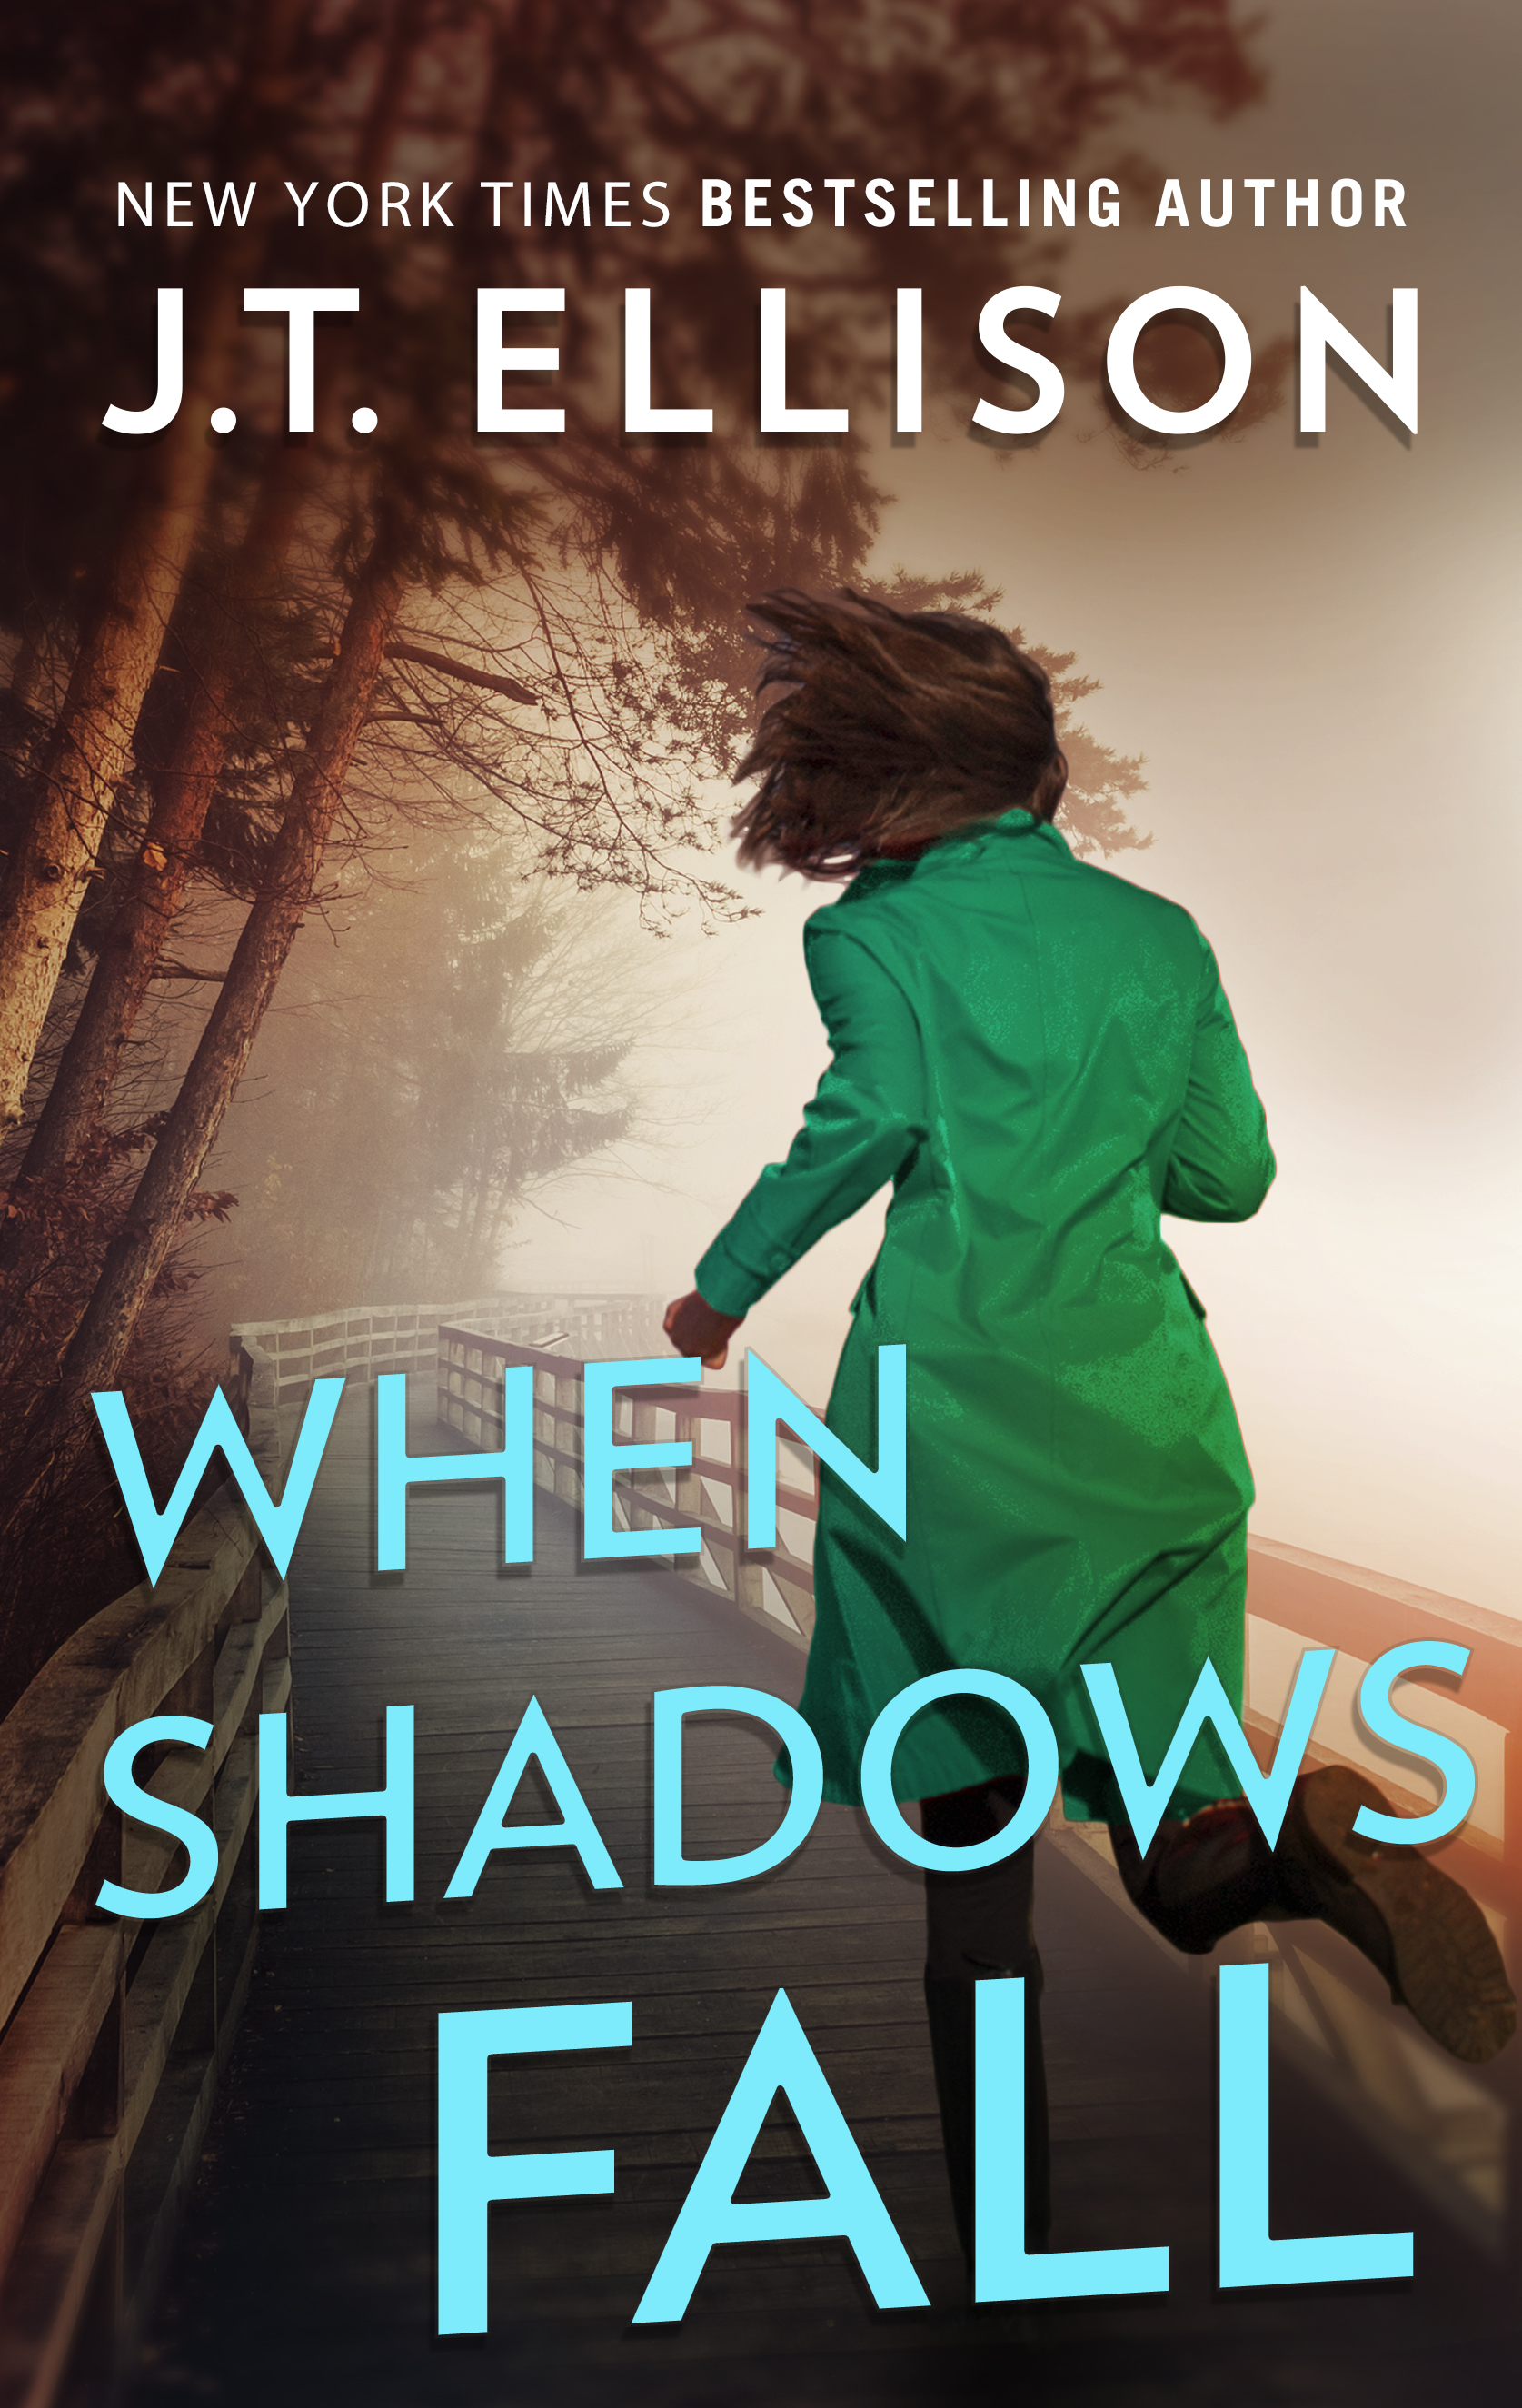 #3 - When Shadows Fall